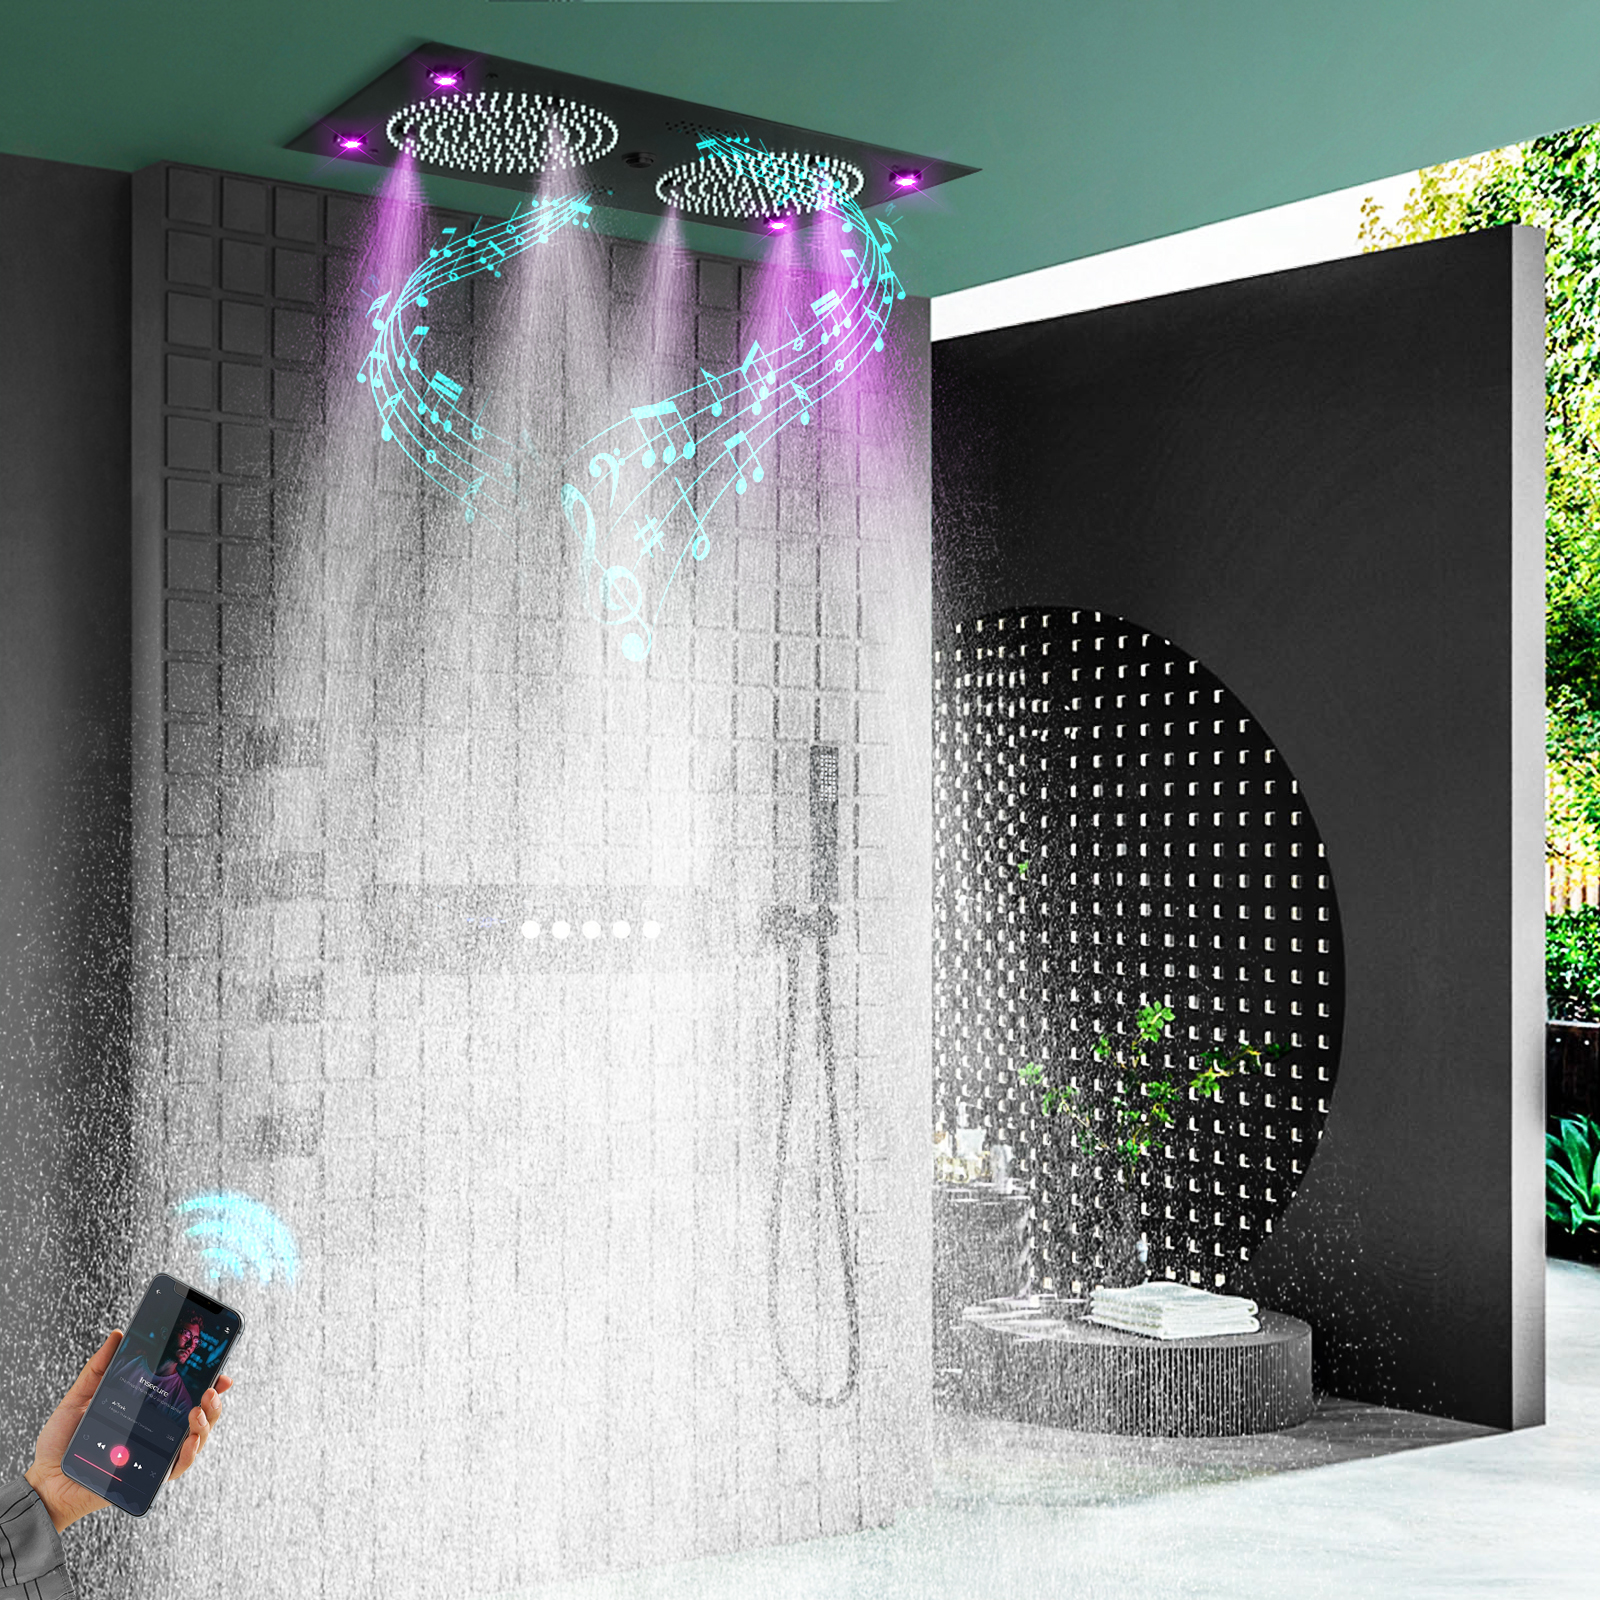 مجموعة نظام الدش الأسود اللامع مقاس 24.5 × 12.5 بوصة للحمام LED رأس دش مياه الأمطار من النحاس وبخاخ صنبور الماء الدافئ الفاخر